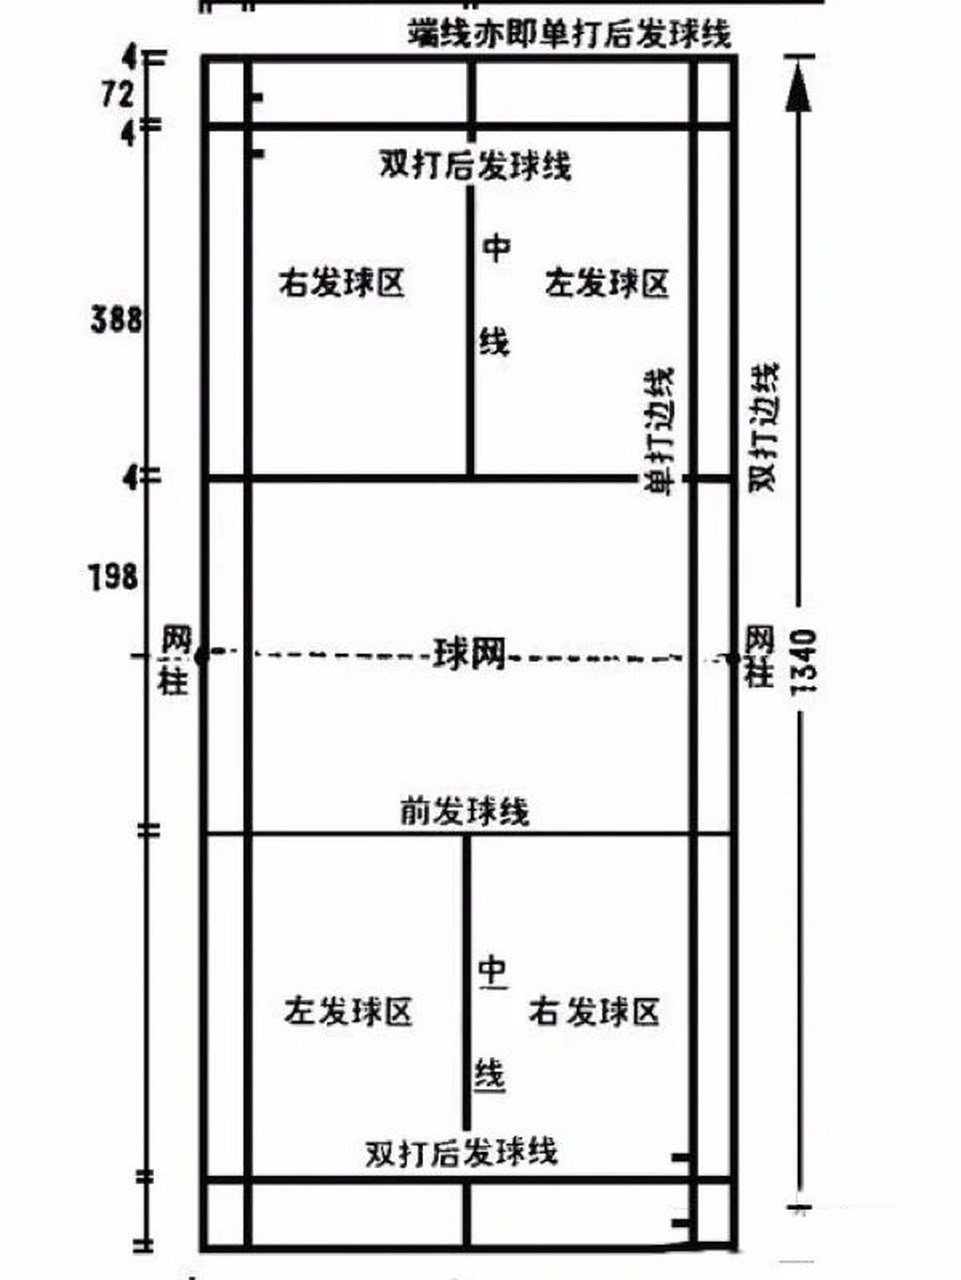 羽毛球场地各线含义 1羽毛球场地尺寸 如图1羽毛球场地为长方形,长13